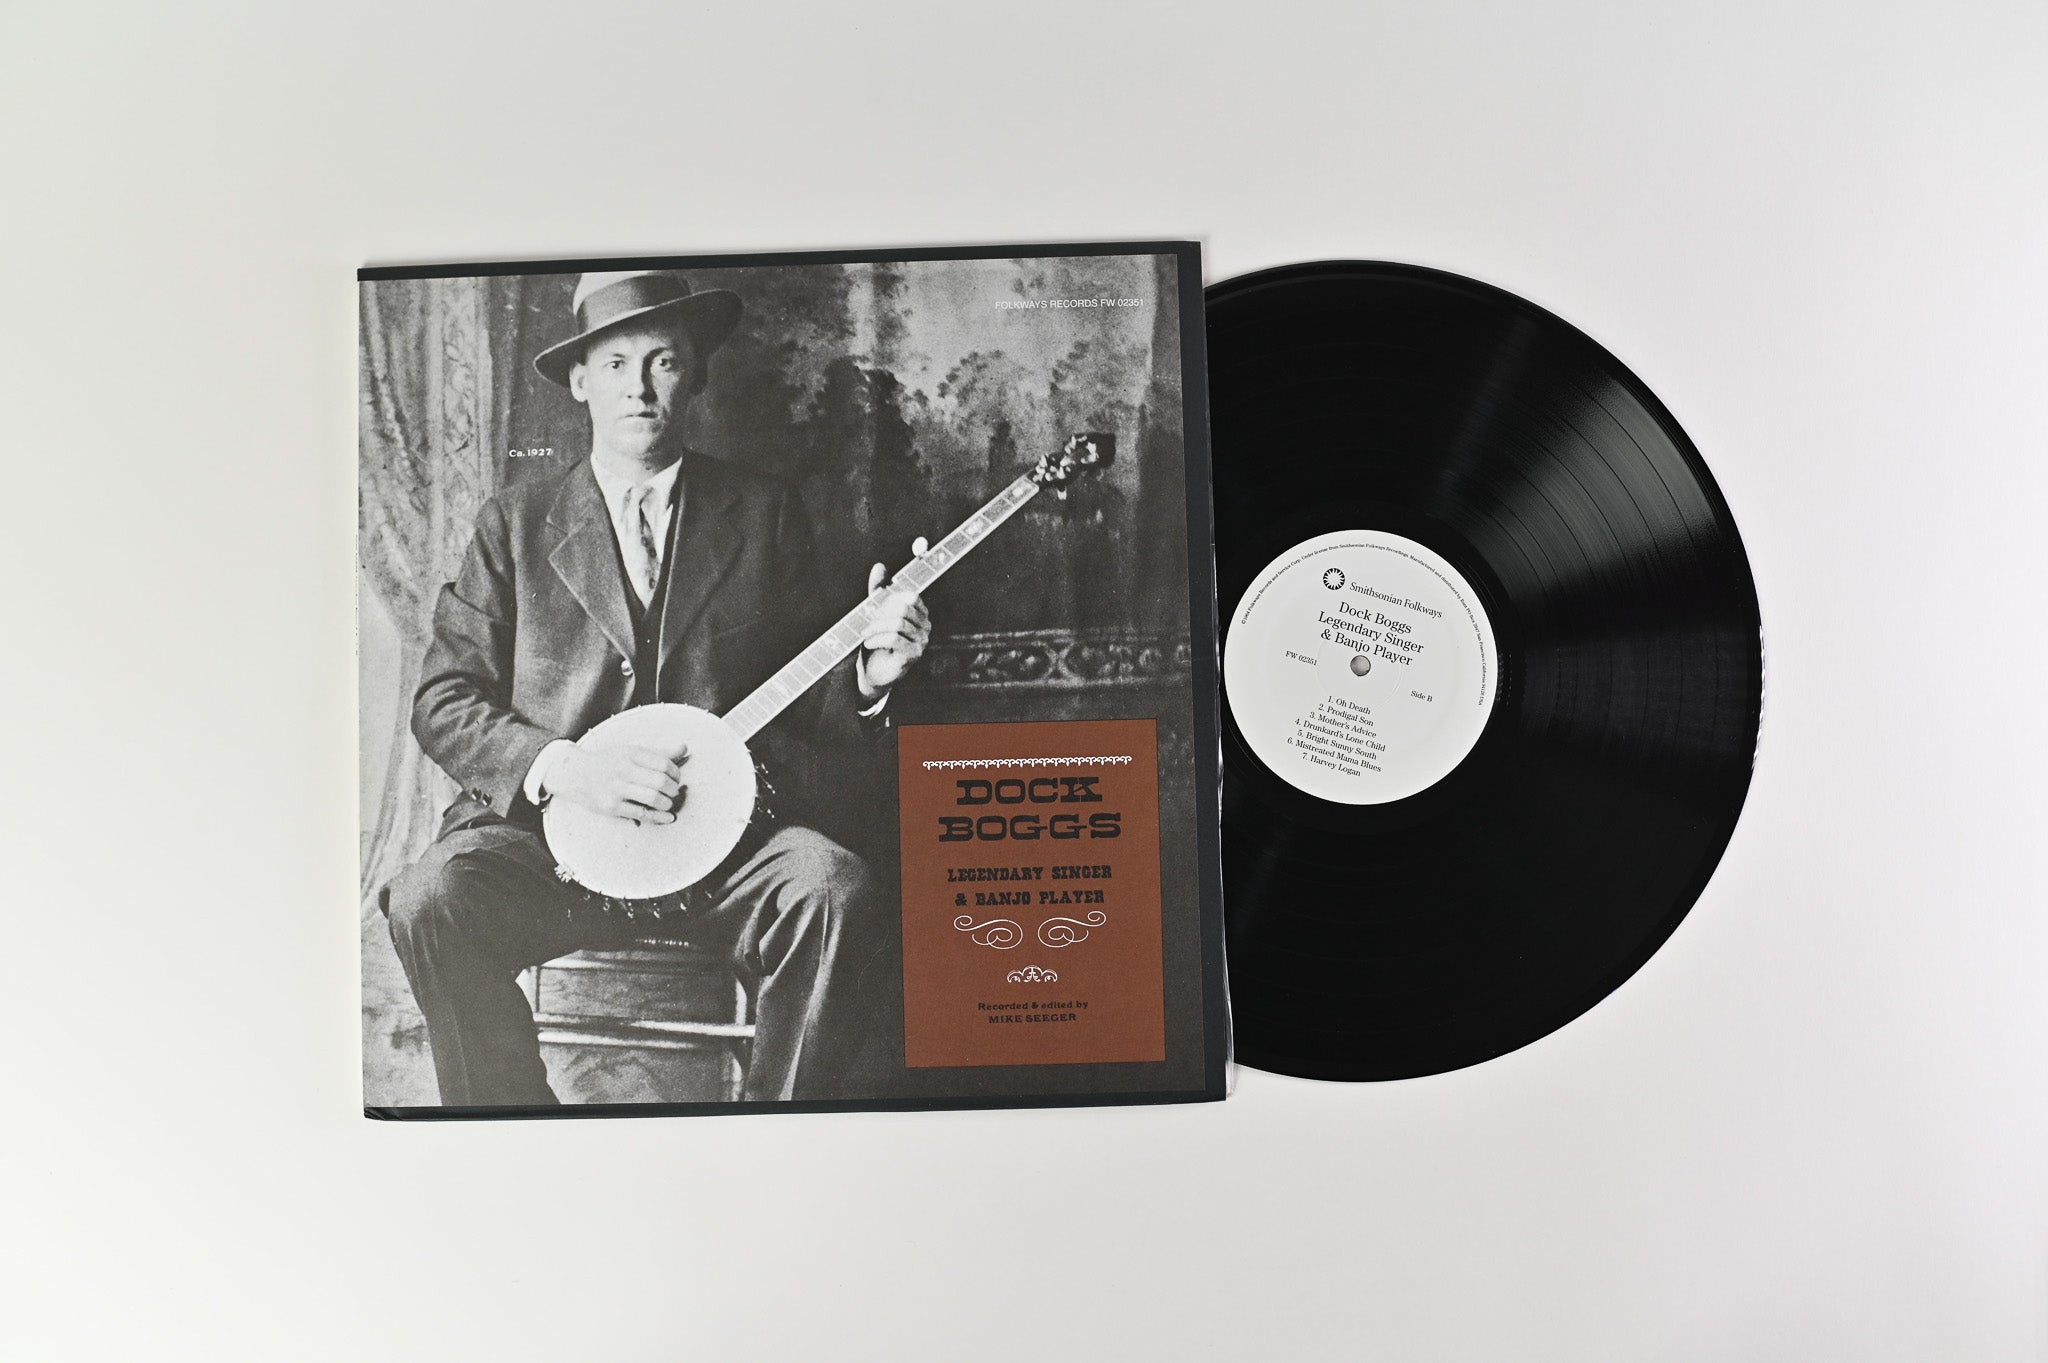 Dock Boggs - Legendary Singer & Banjo Player Reissue on Smithsonian Folkways